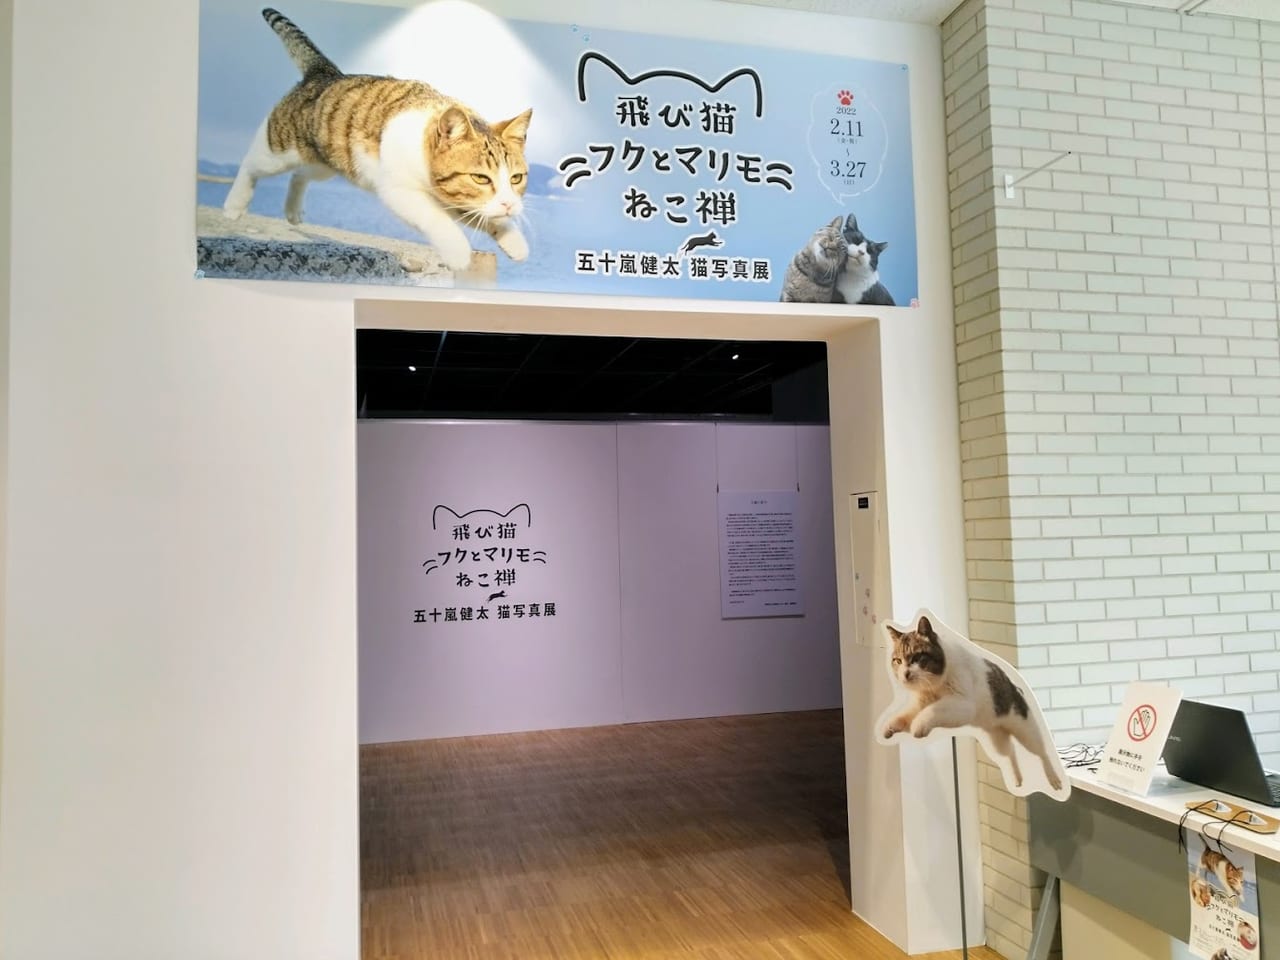 宝塚市 市立文化芸術センターにて 飛び猫 写真展開催中 溢れる猫に囲まれるひとときを過ごせます 号外net 宝塚市 川西市